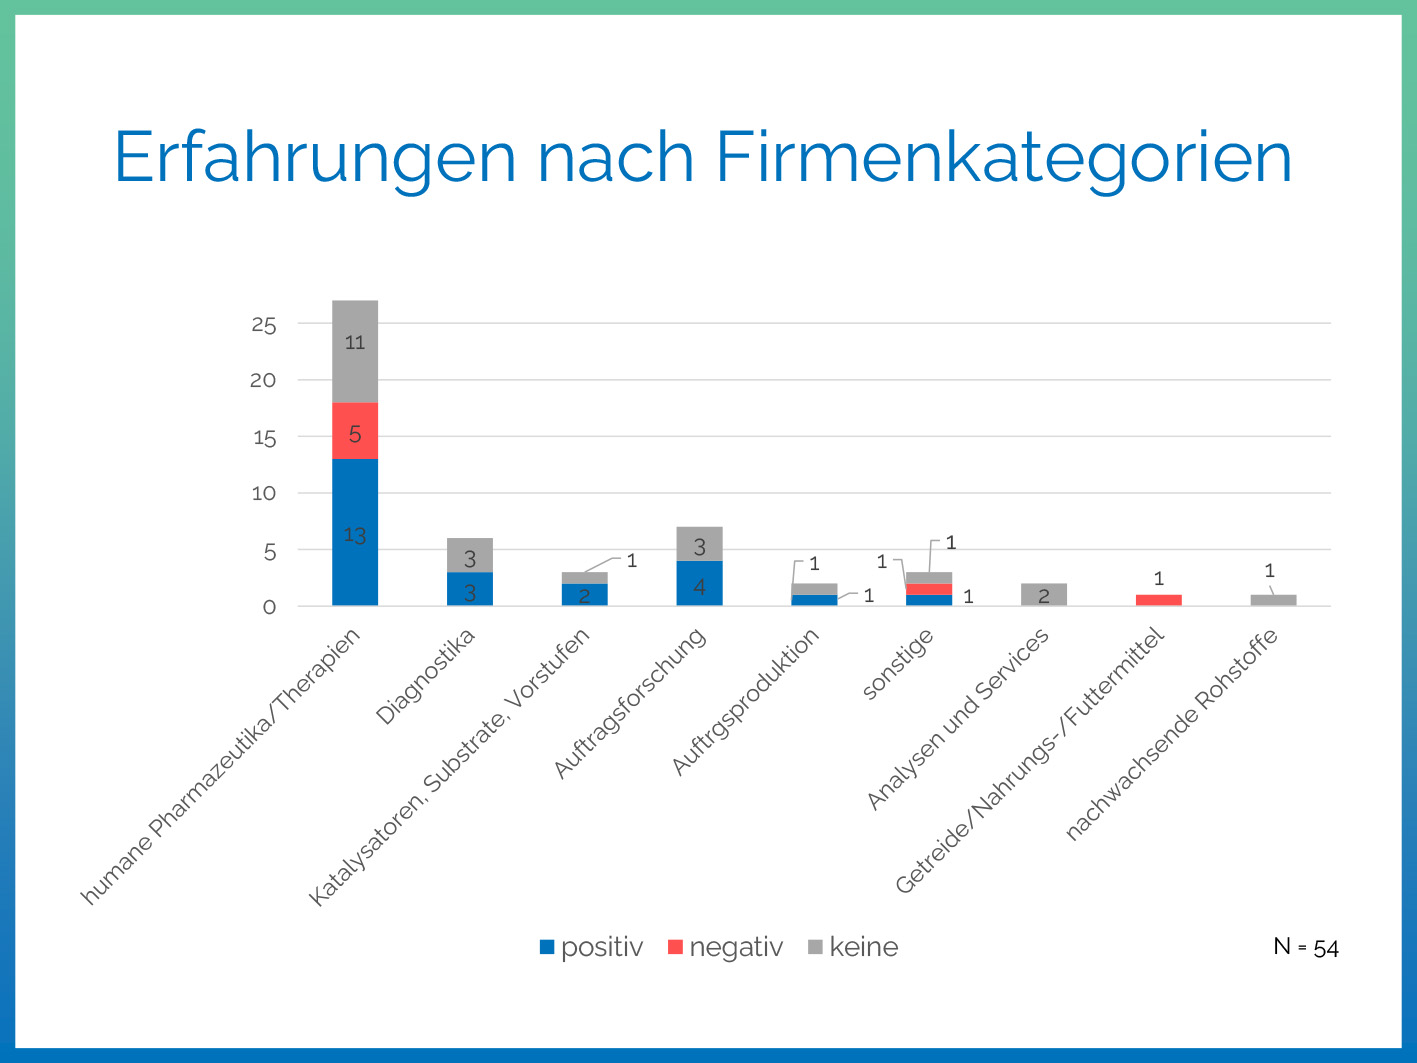 Infografik: Erfahrungen mit der Forschungszulage nach Firmenkategorie (Quelle: Biotechnologie-Branchenverband BIO Deutschland)